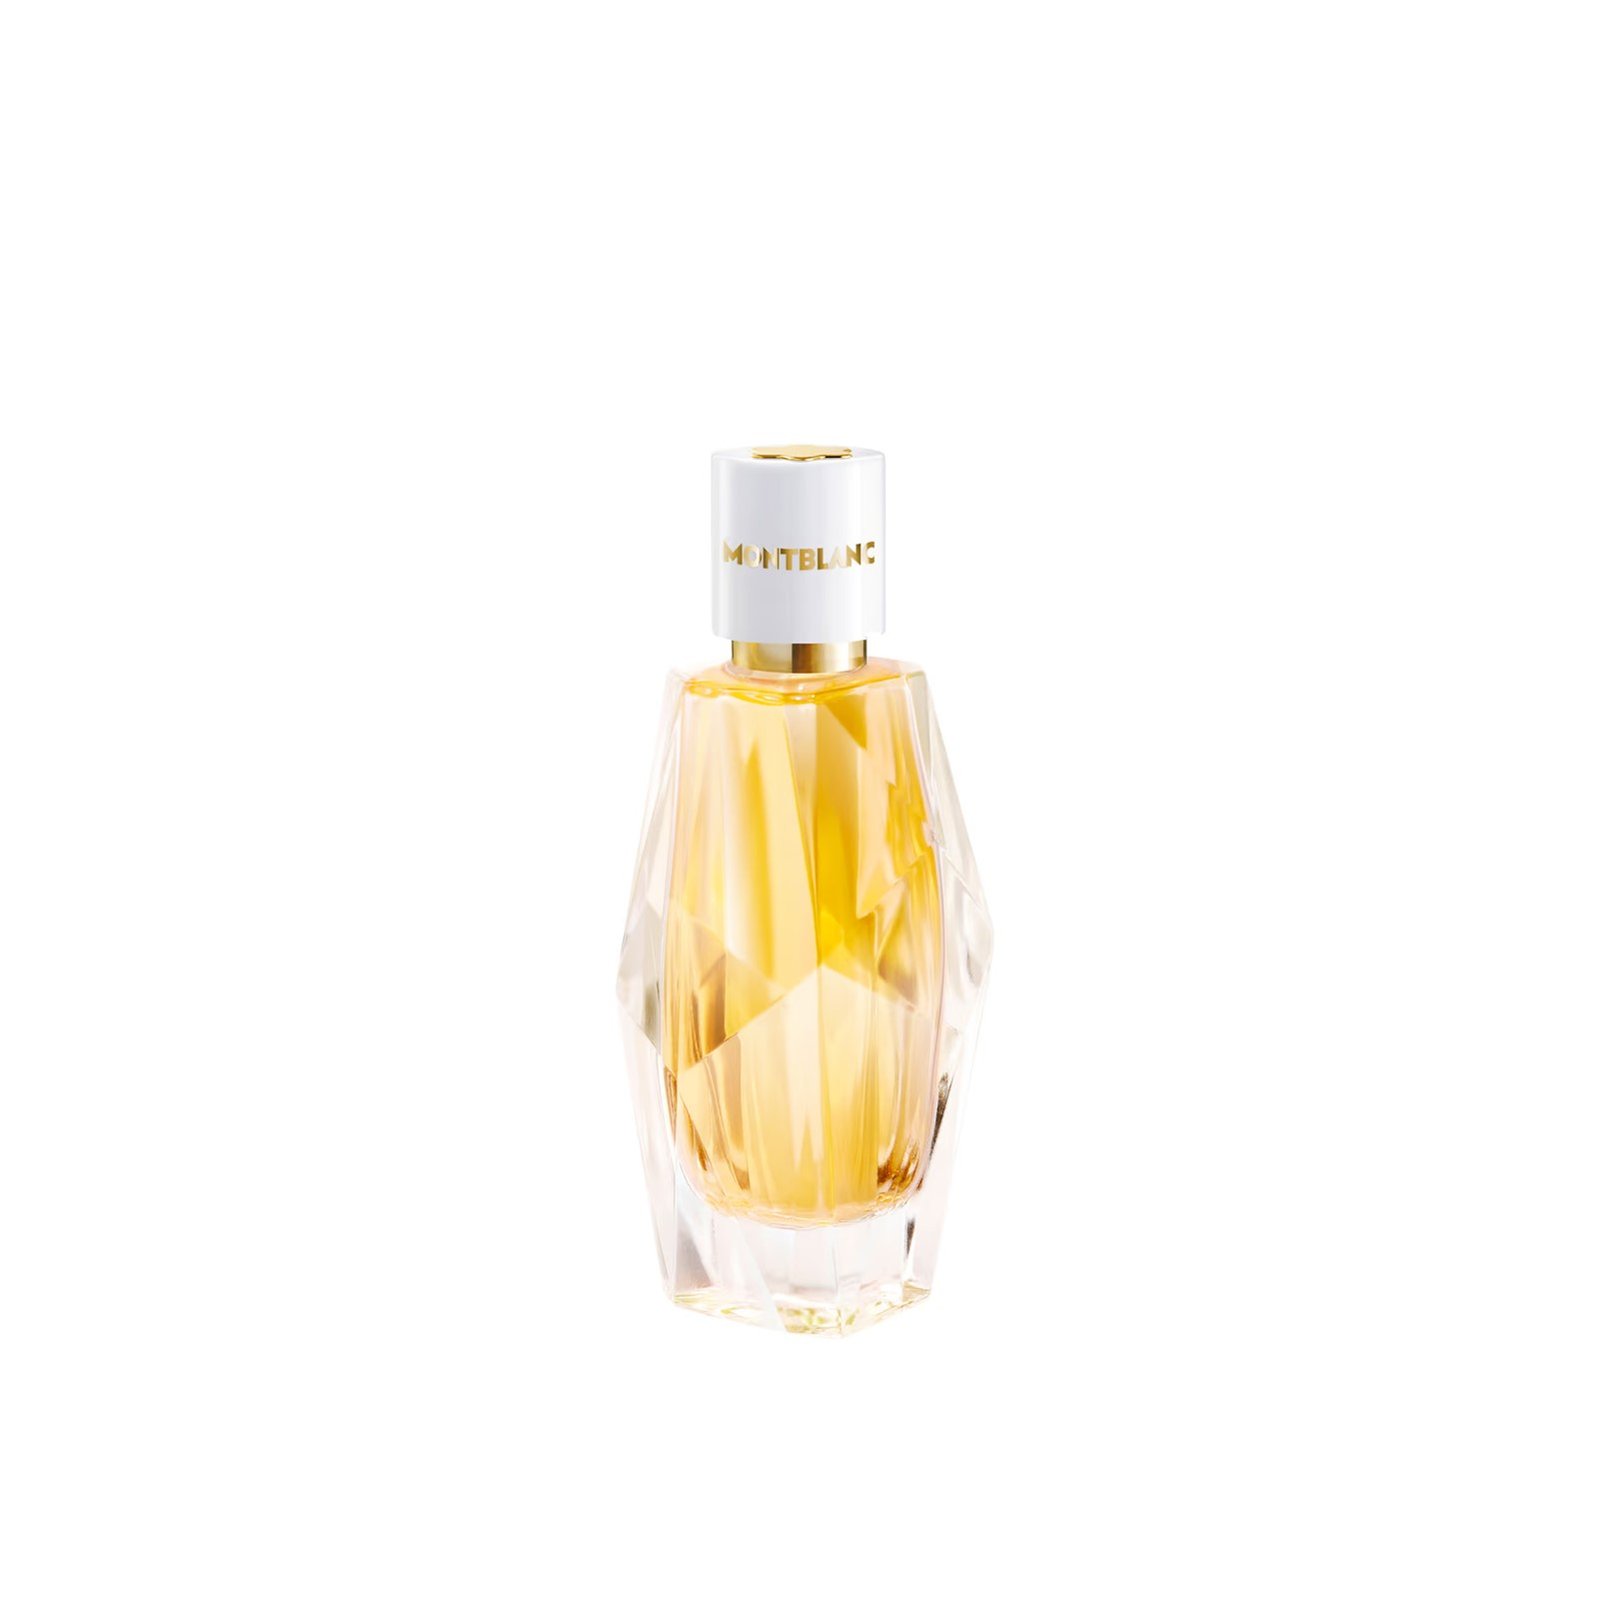 Montblanc Signature Absolue Eau de Parfum 30ml (1.0 fl oz)